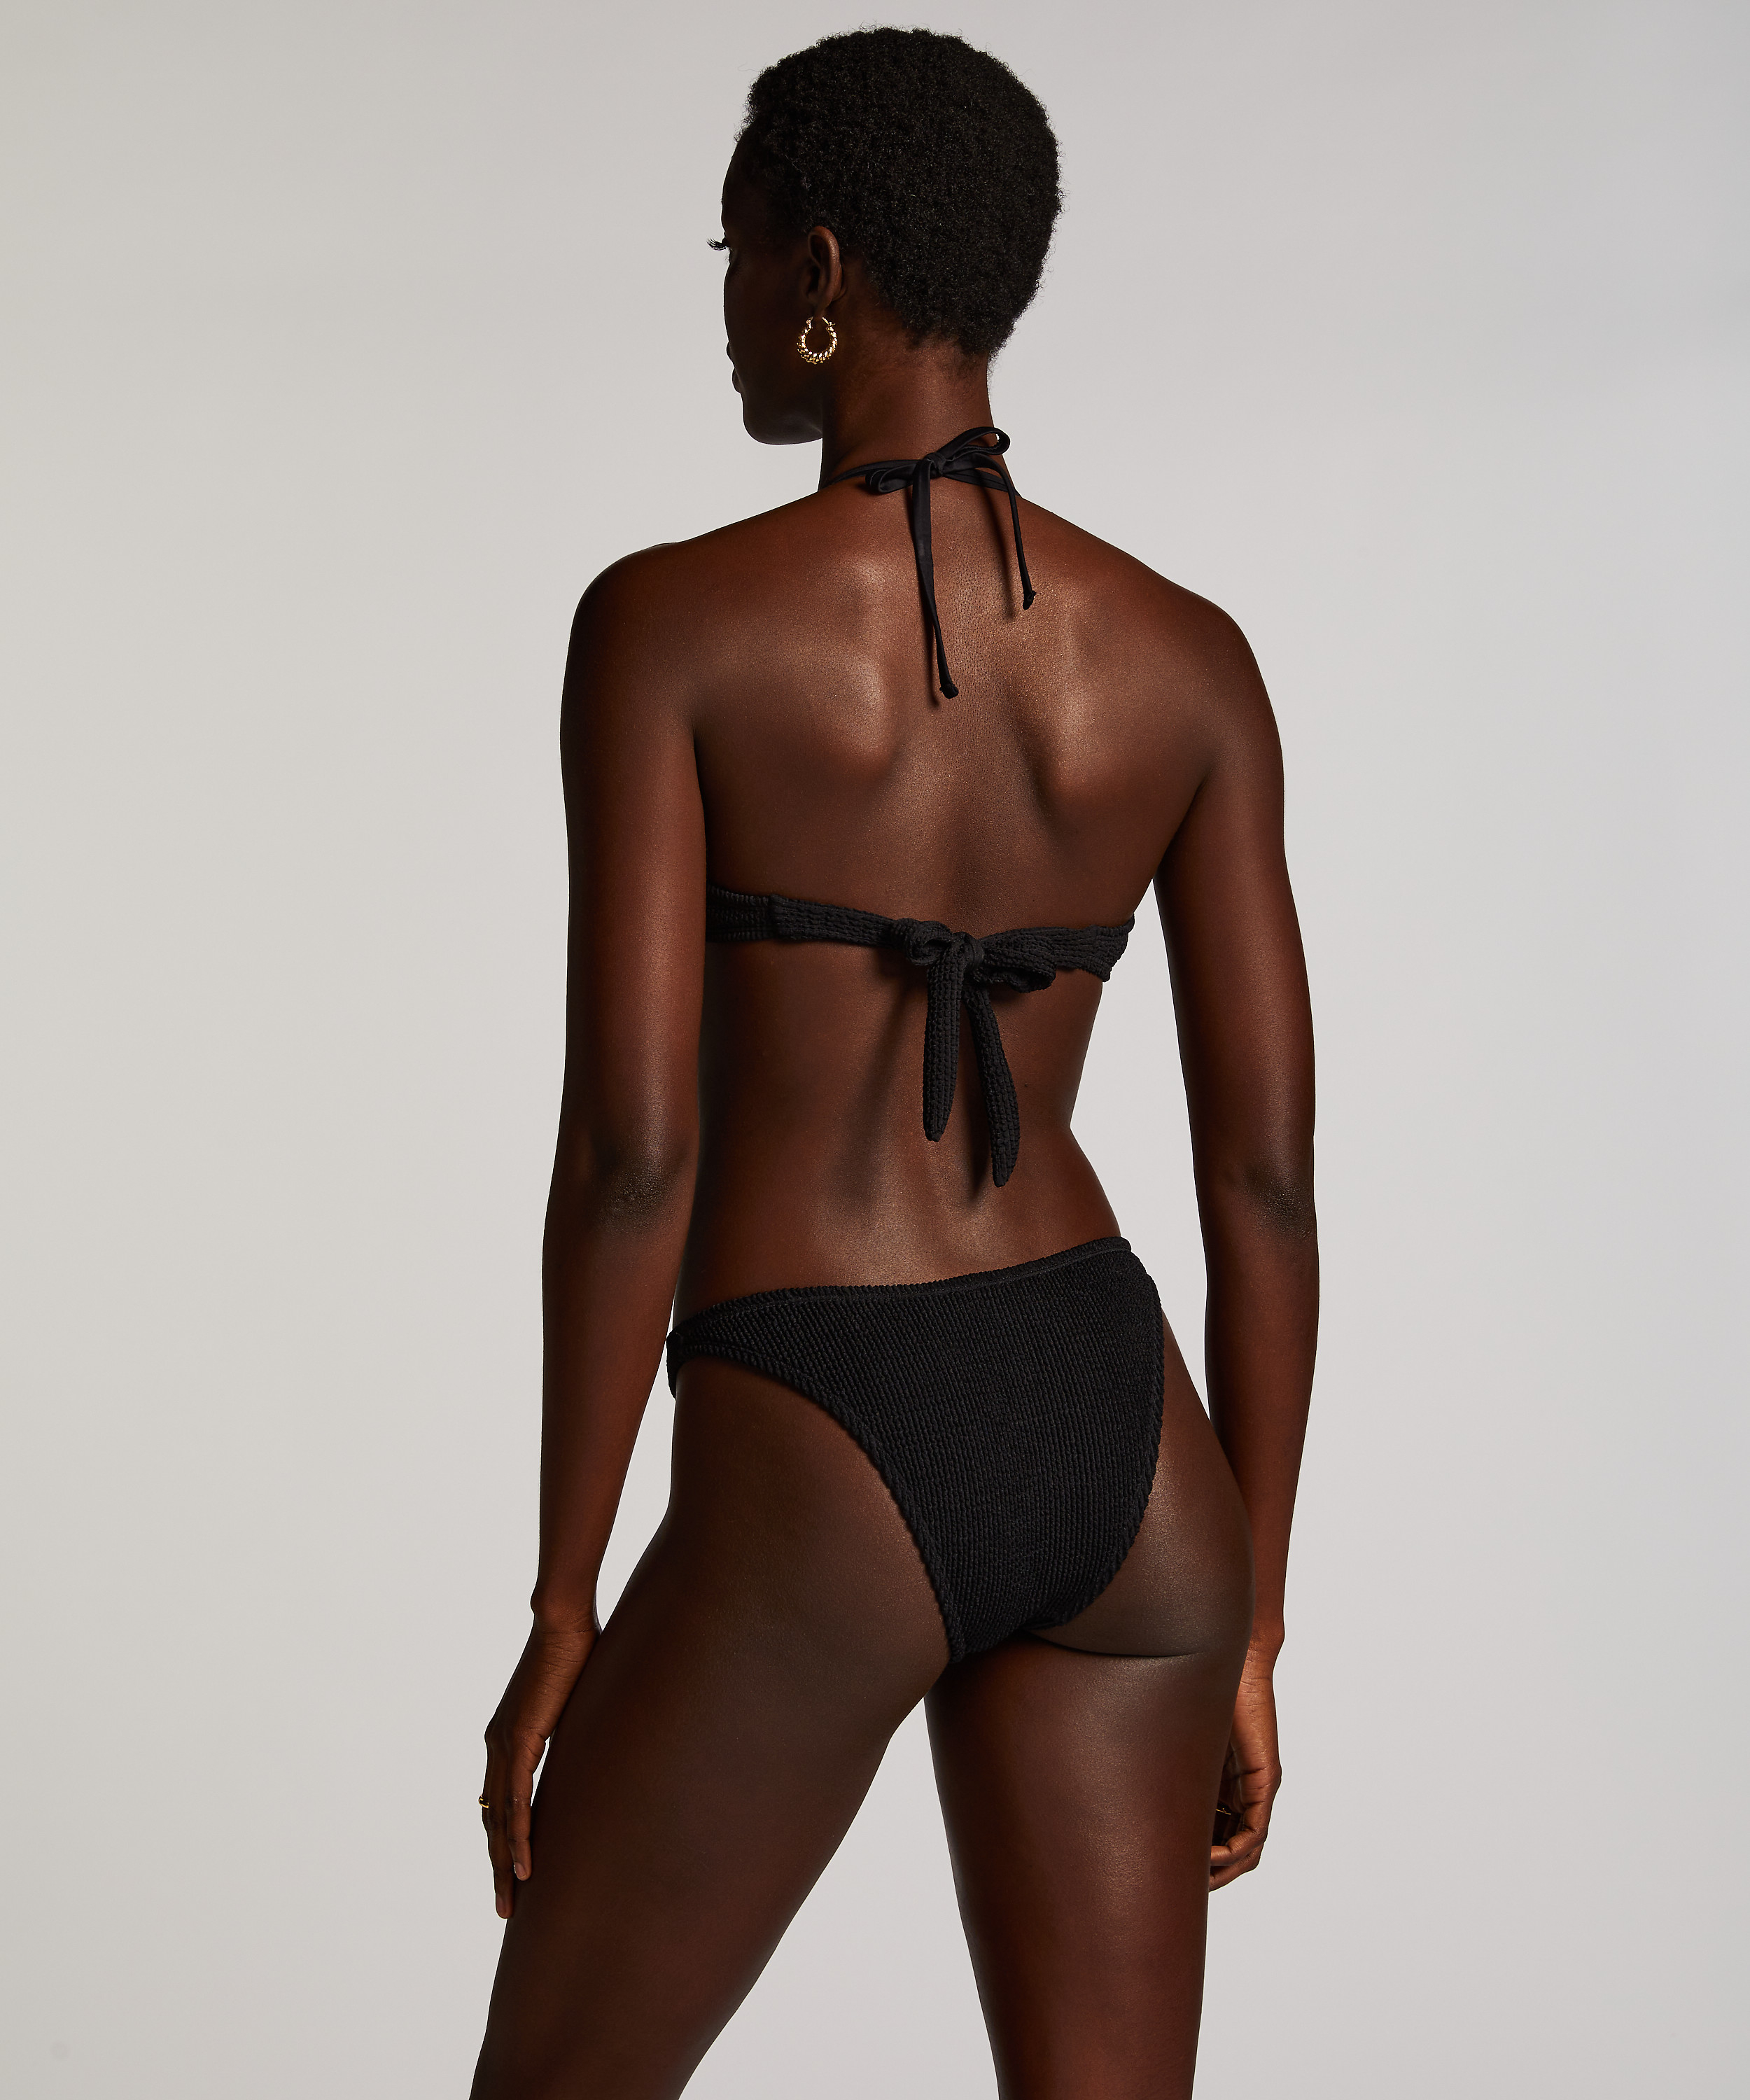 Bikini Slip mit hohem Beinausschnitt Crinkle, Schwarz, main